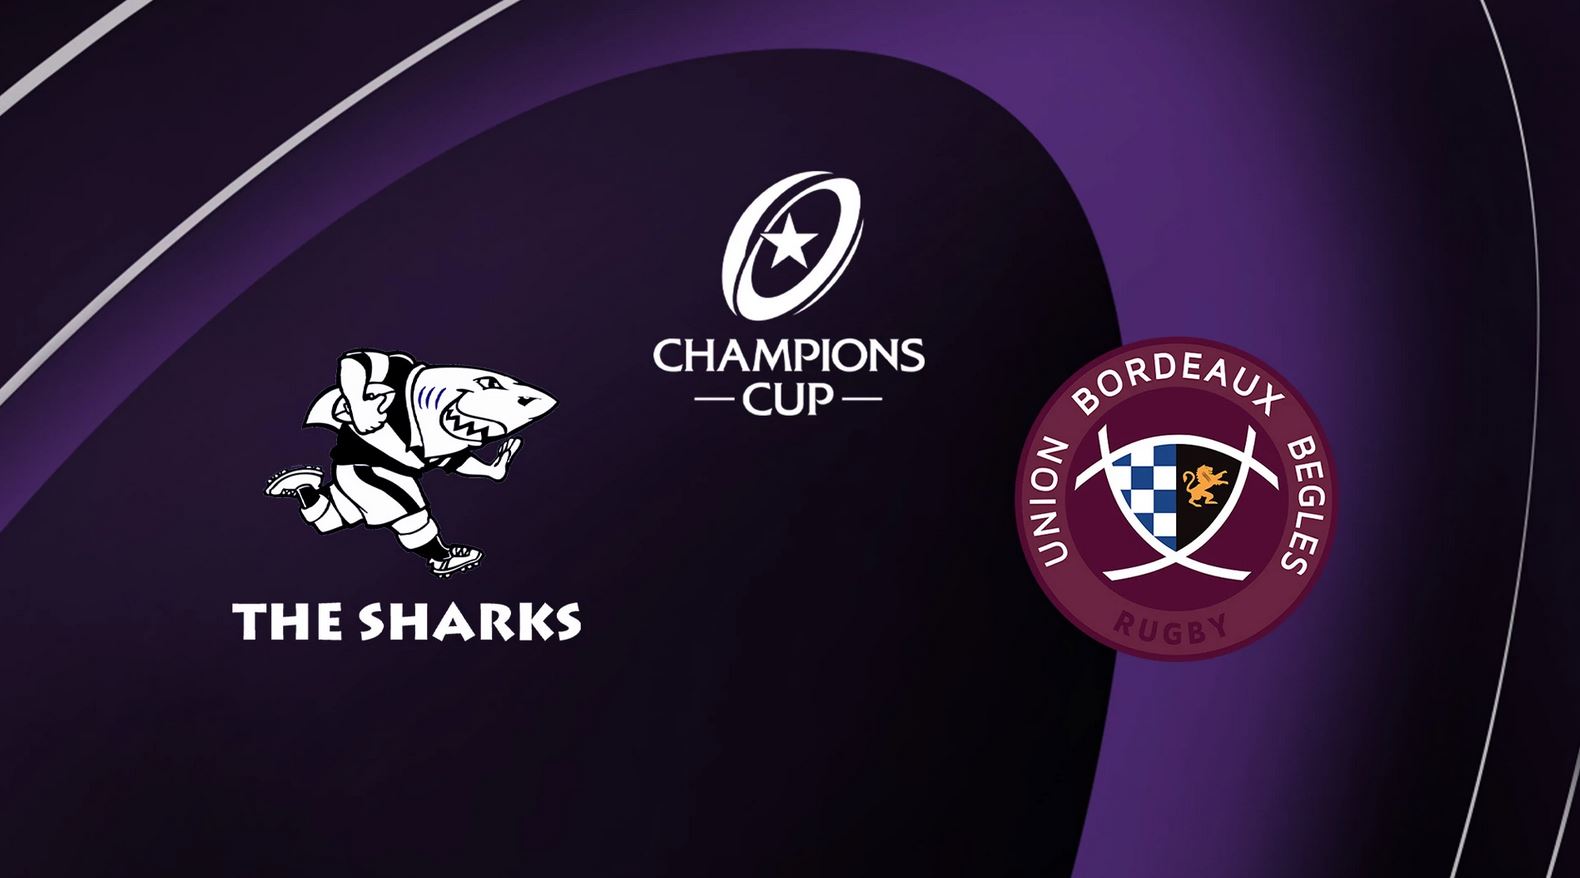 Sharks / Bordeaux-Bègles (TV/Streaming) Sur quelles chaînes et à quelle heure suivre le match de Champions Cup ?